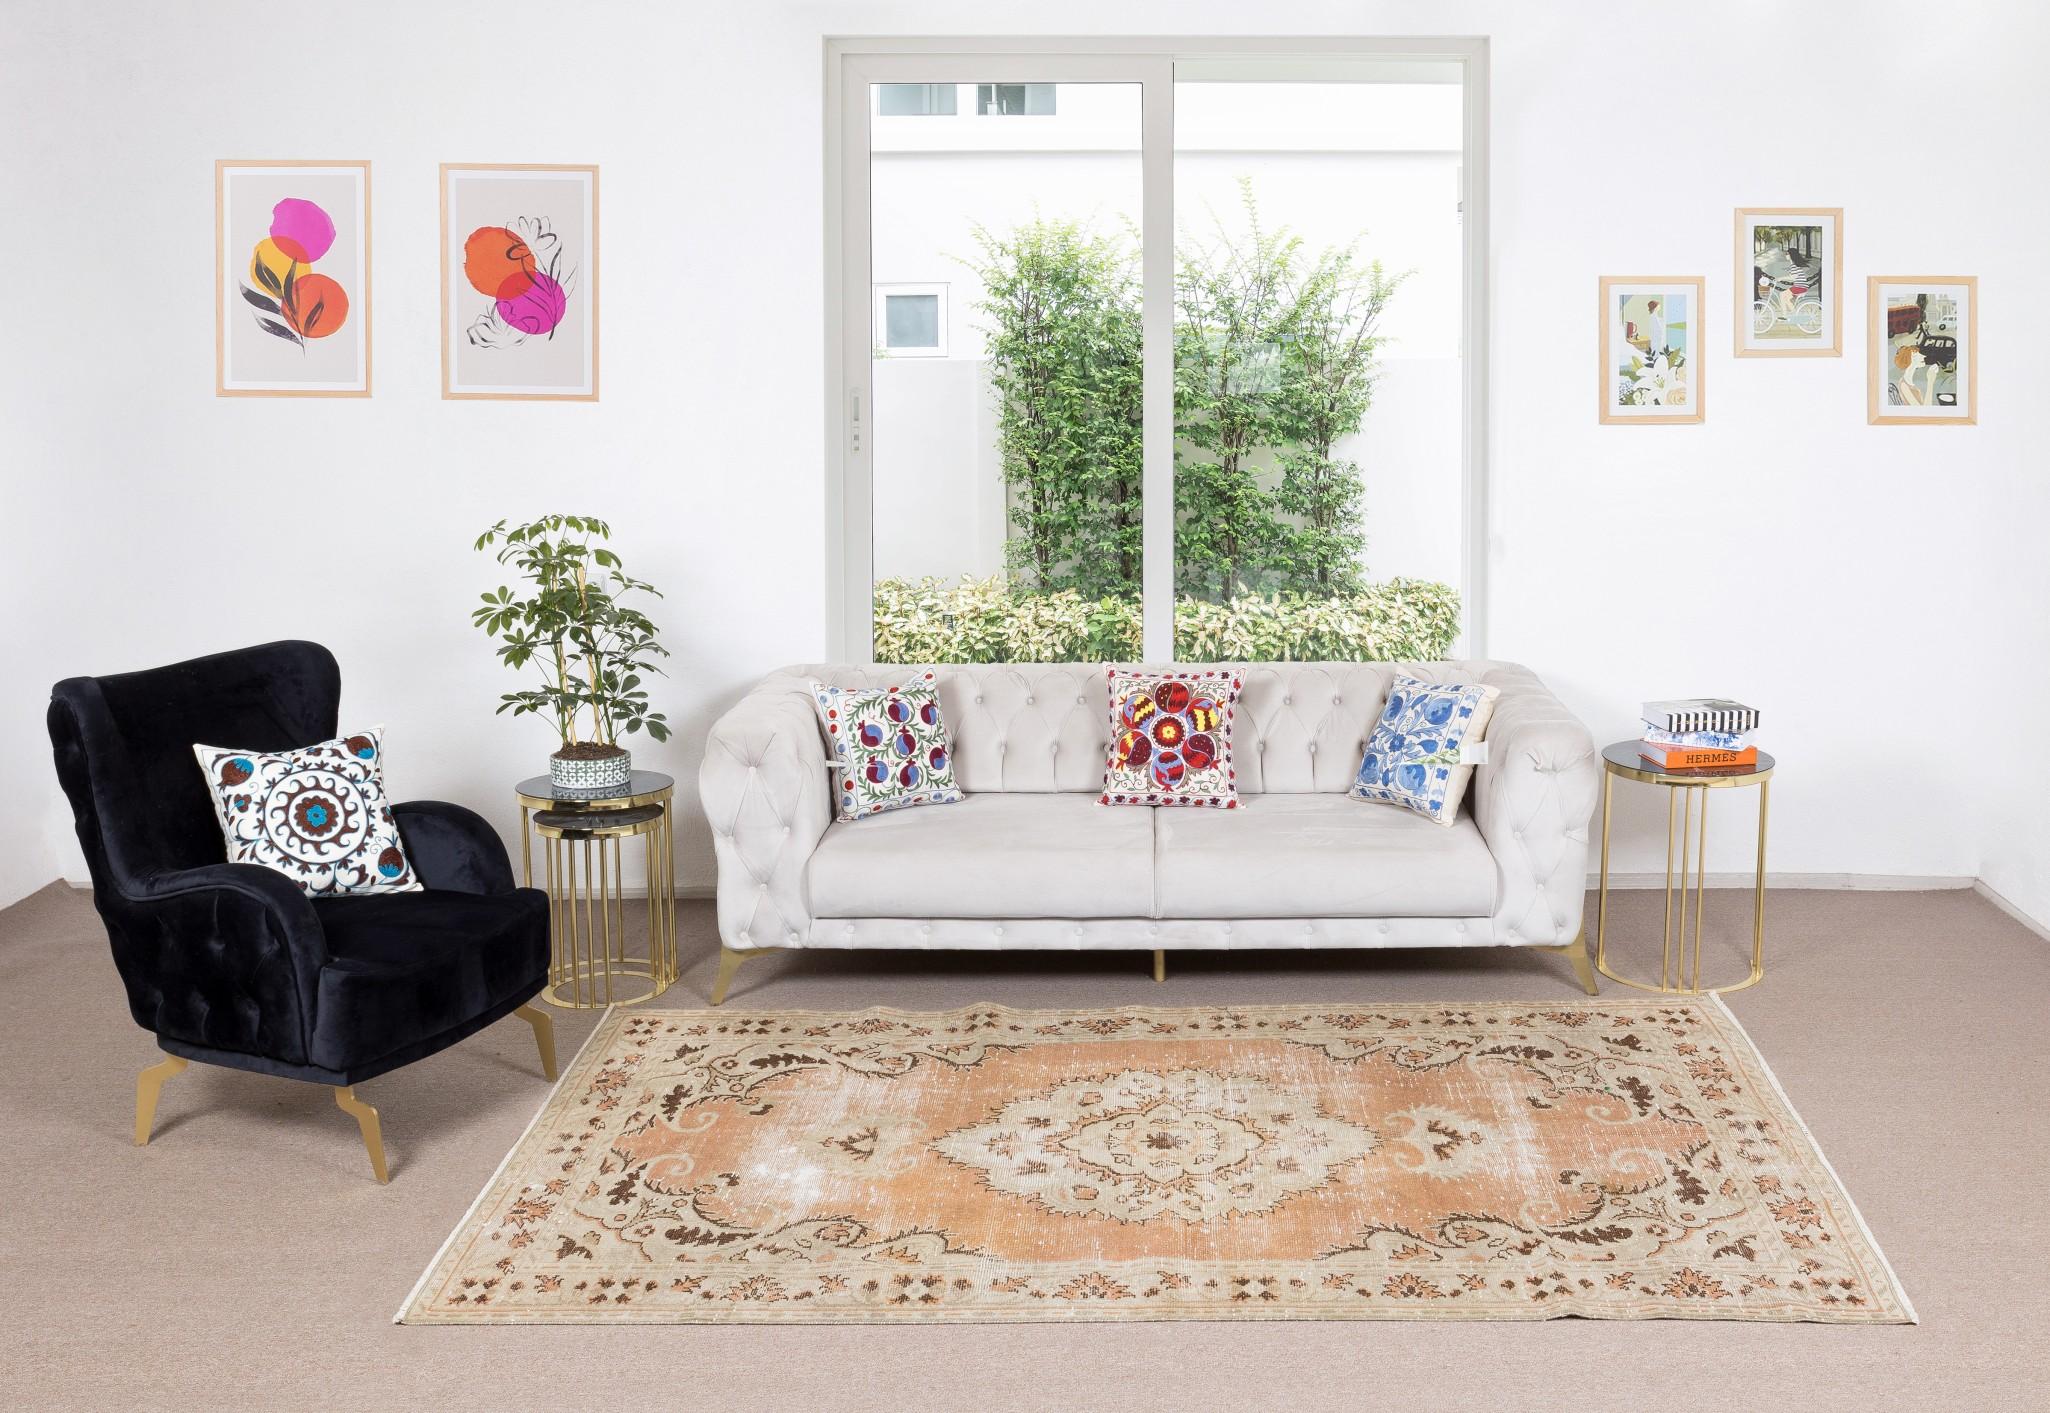 Nos tapis délavés par le soleil sont tous des pièces uniques, nouées à la main, datant de 50 à 70 ans. Chacun d'entre eux présente une esthétique artisanale singulière, inspirée des traditions séculaires de tissage de tapis turcs. Ces tapis sont